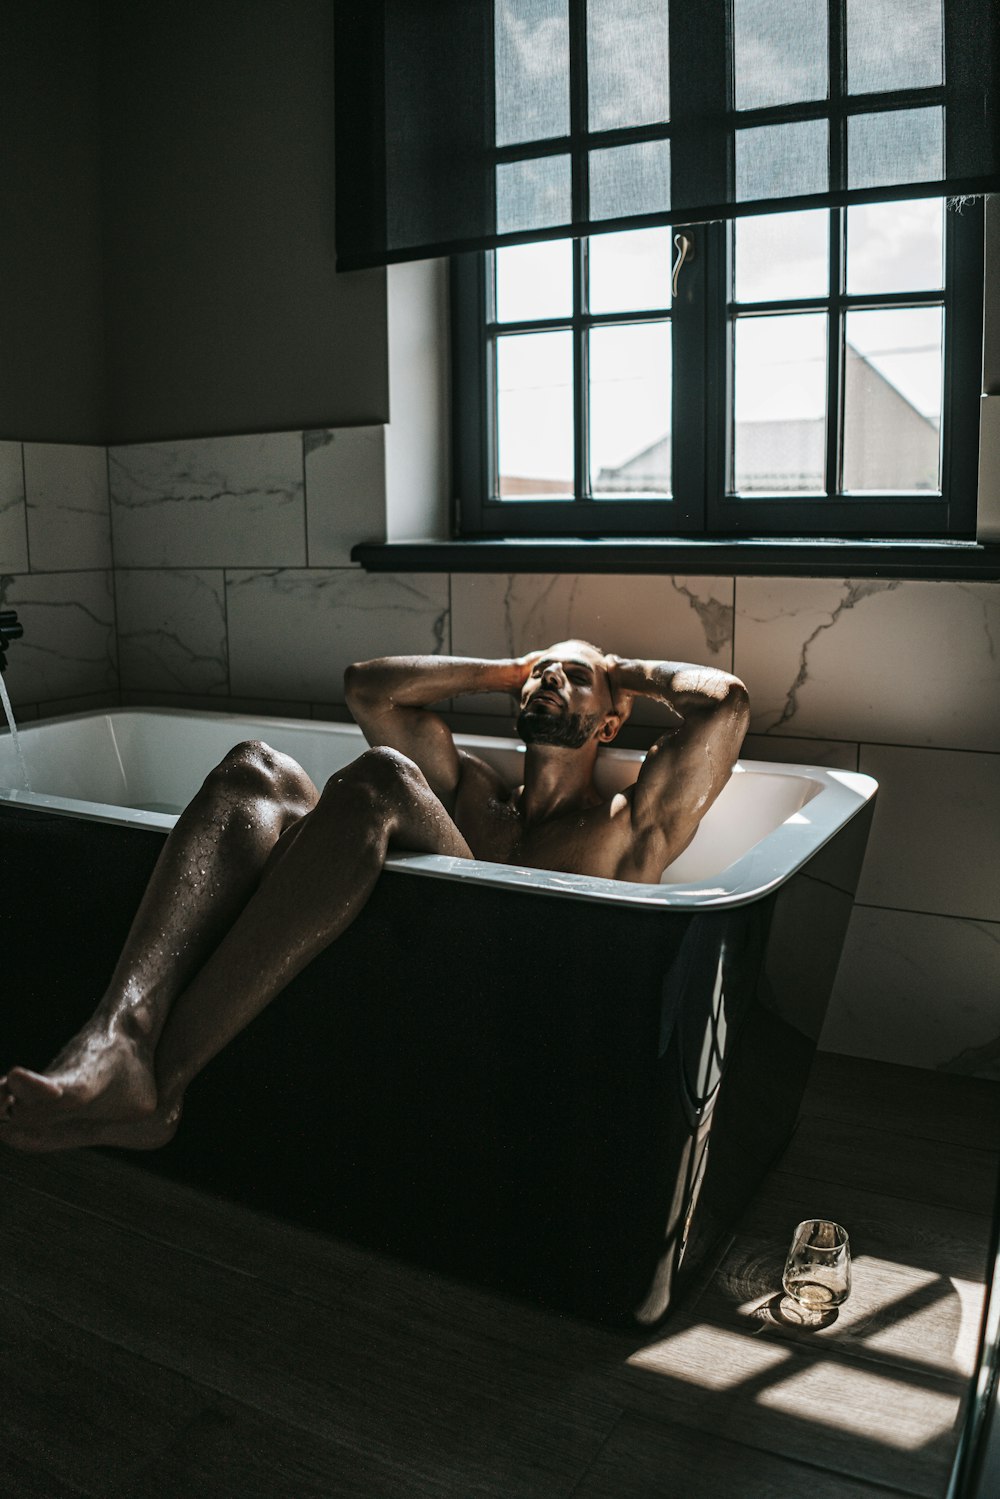 Un hombre desnudo está sentado en una bañera